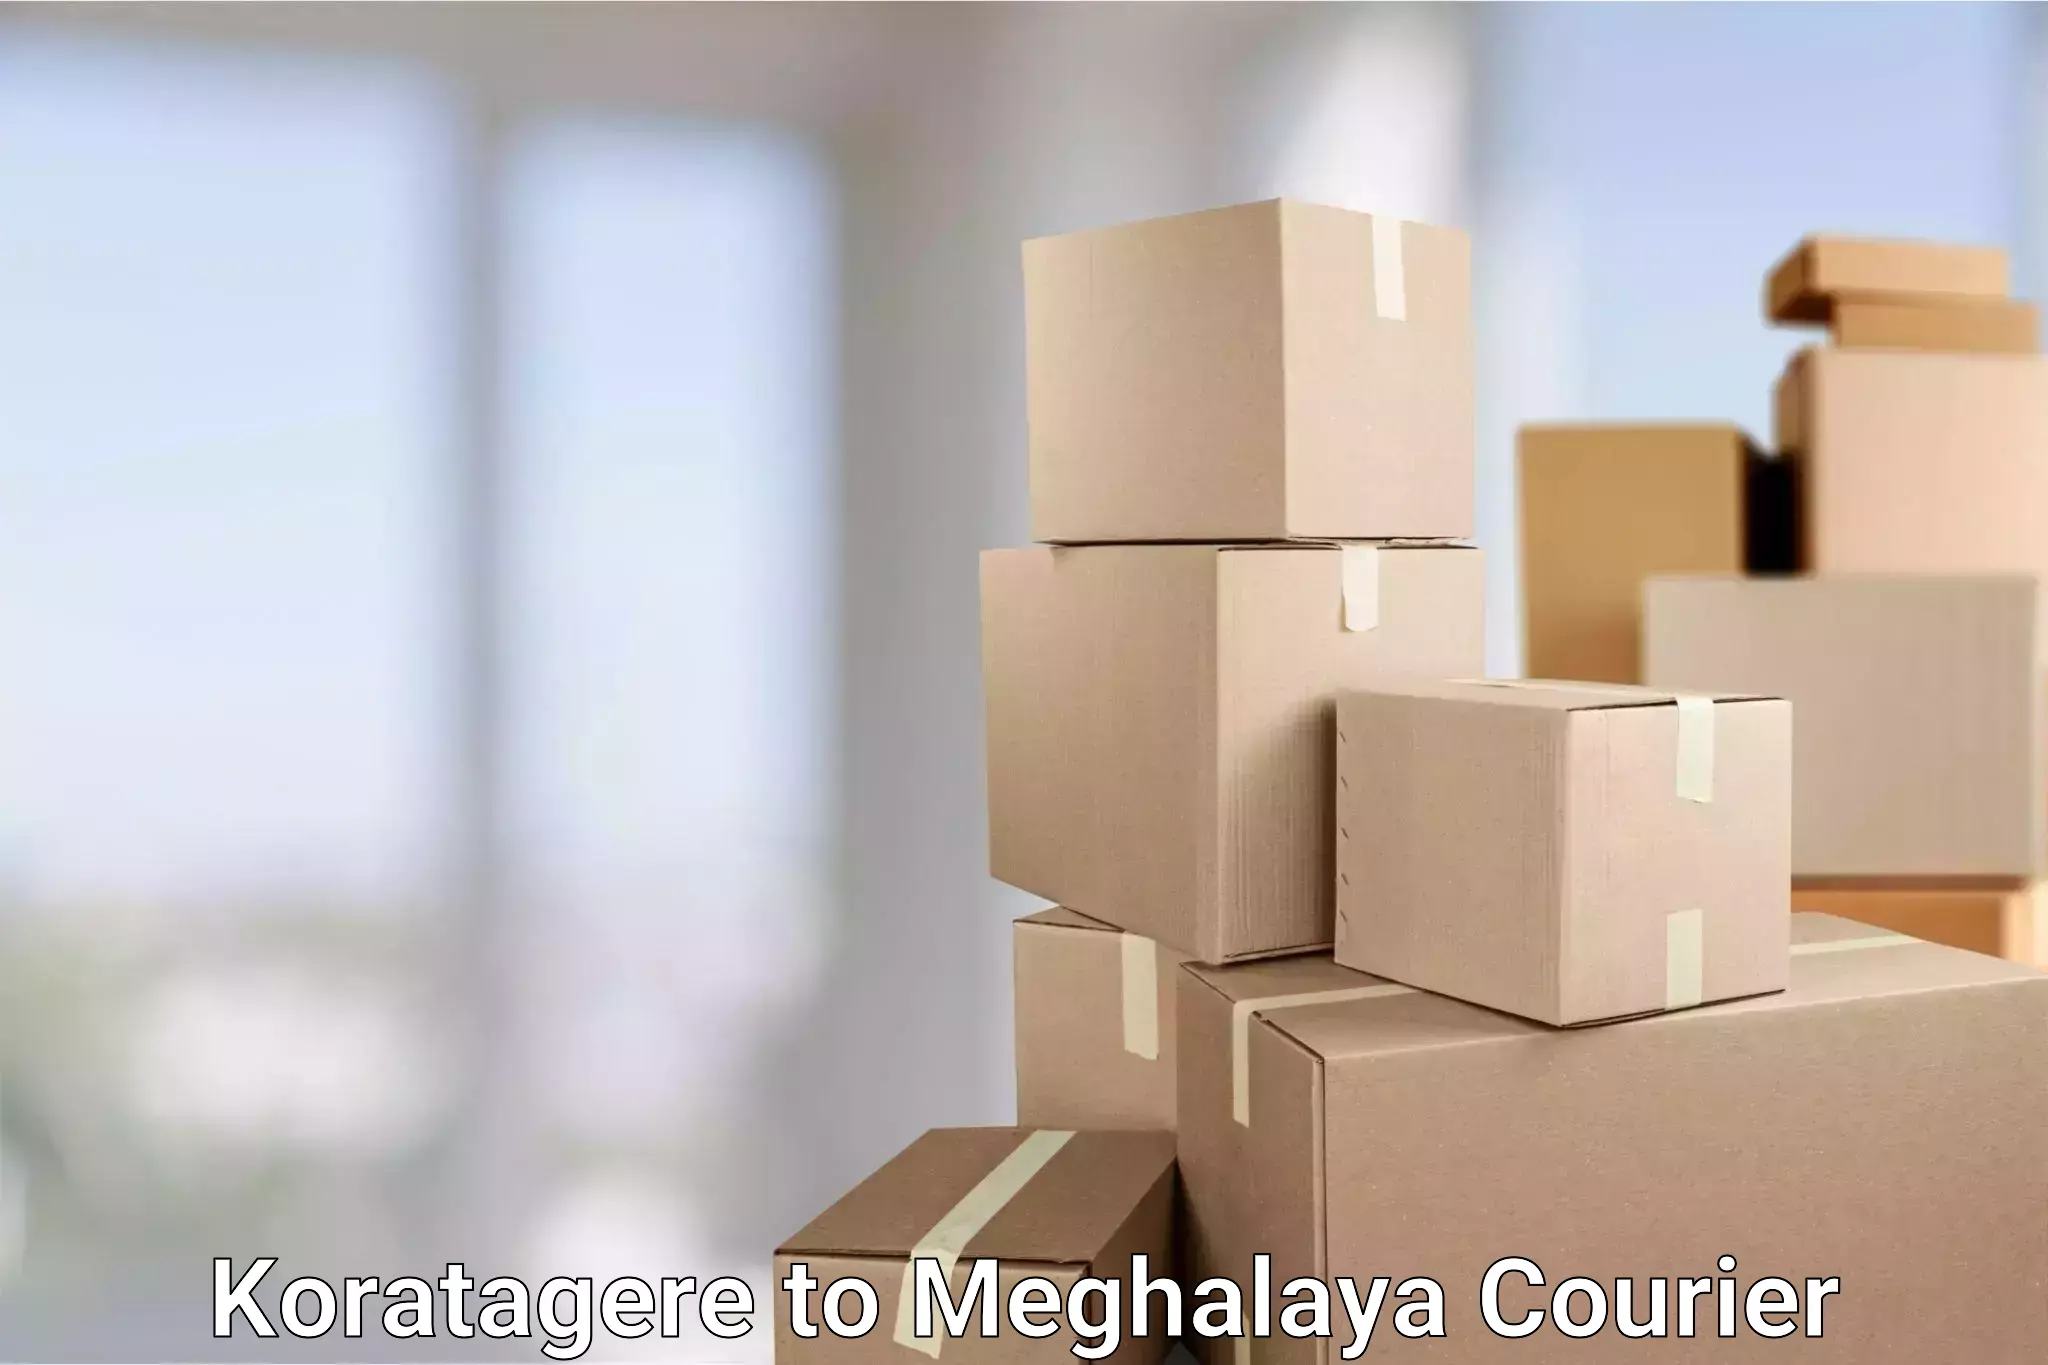 Door-to-door freight service Koratagere to Meghalaya